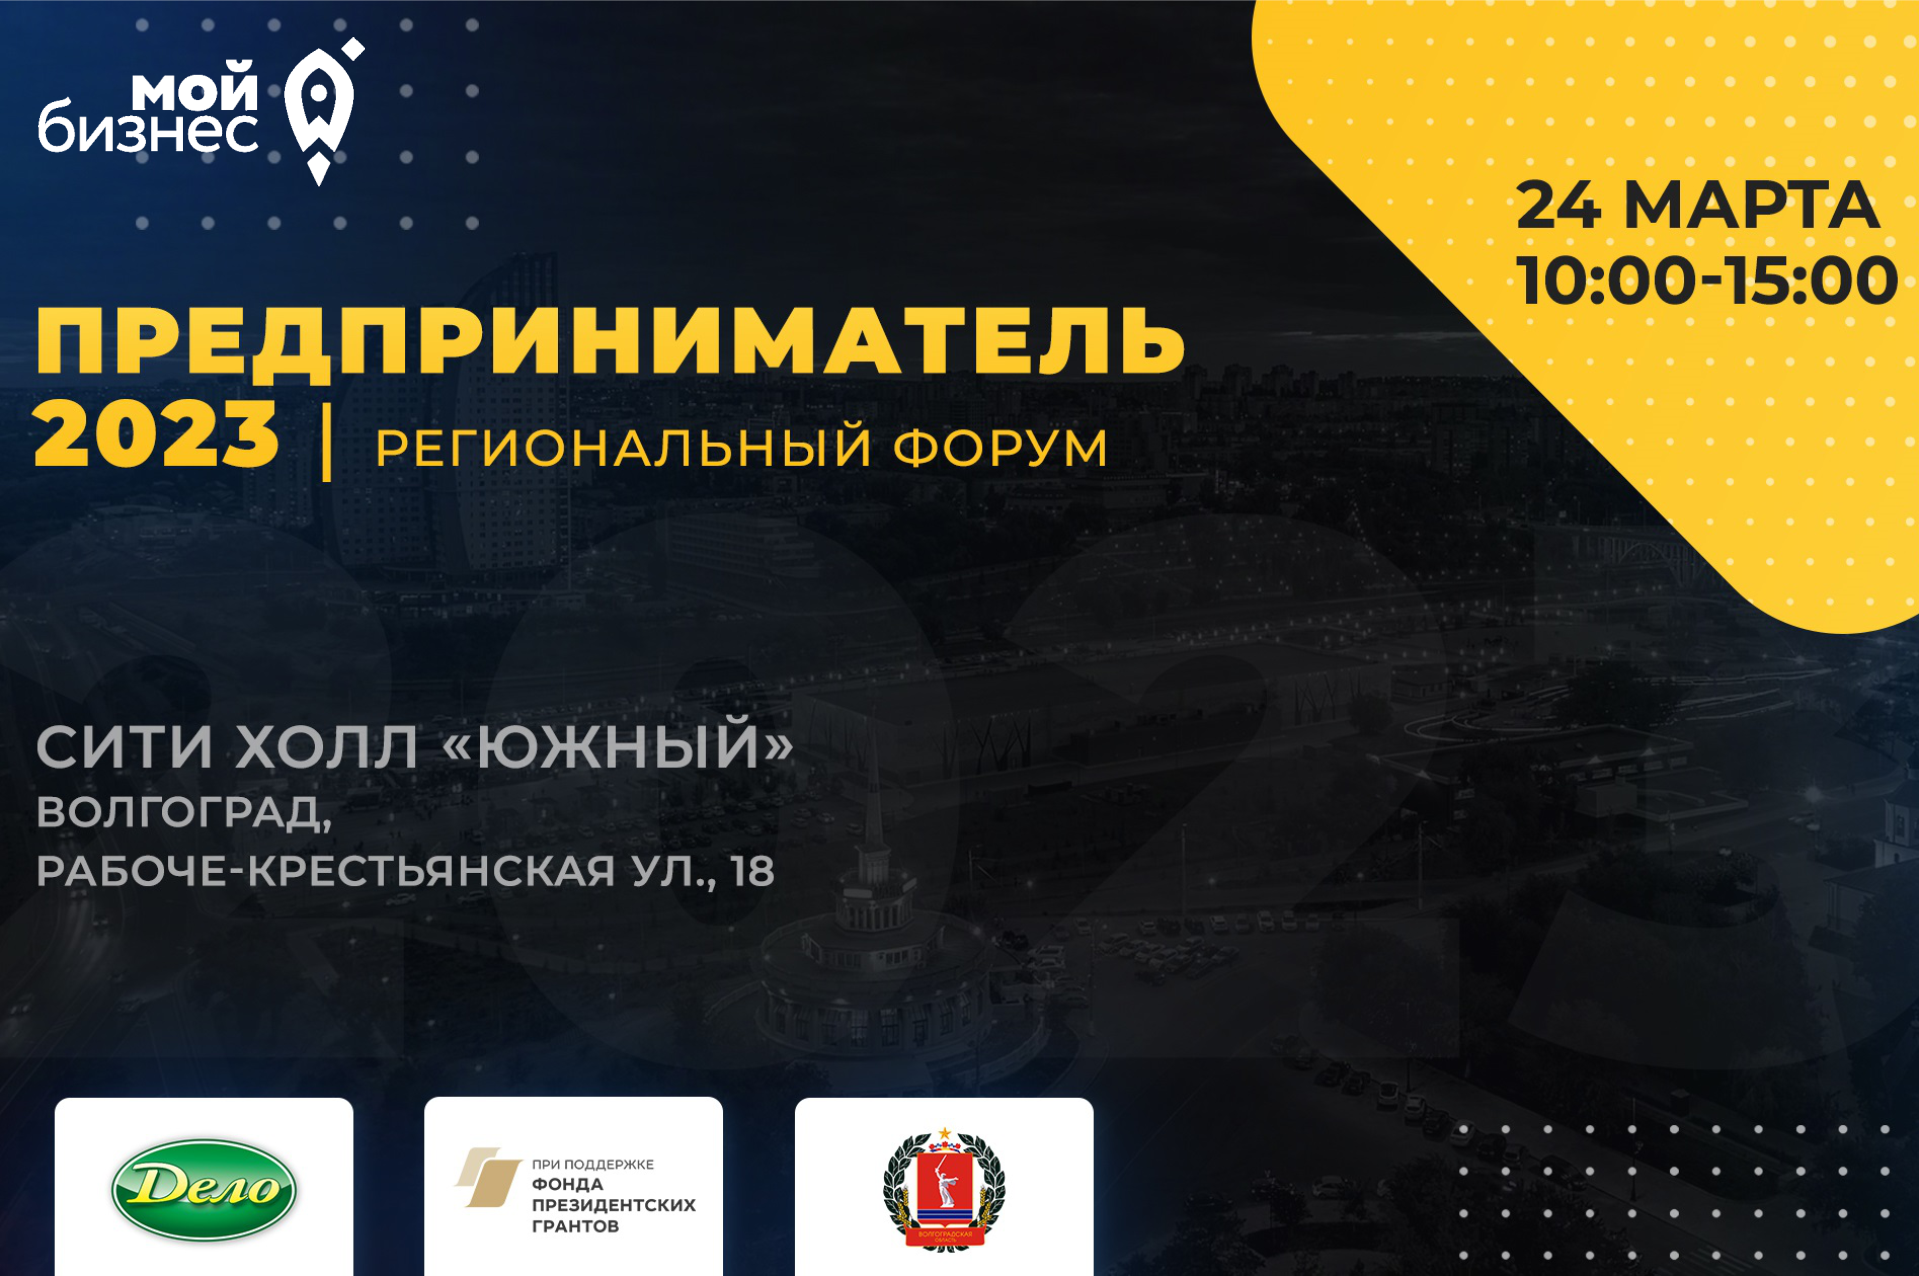 24 марта в Волгограде пройдет Региональный Форум «ПРЕДПРИНИМАТЕЛЬ 2023»